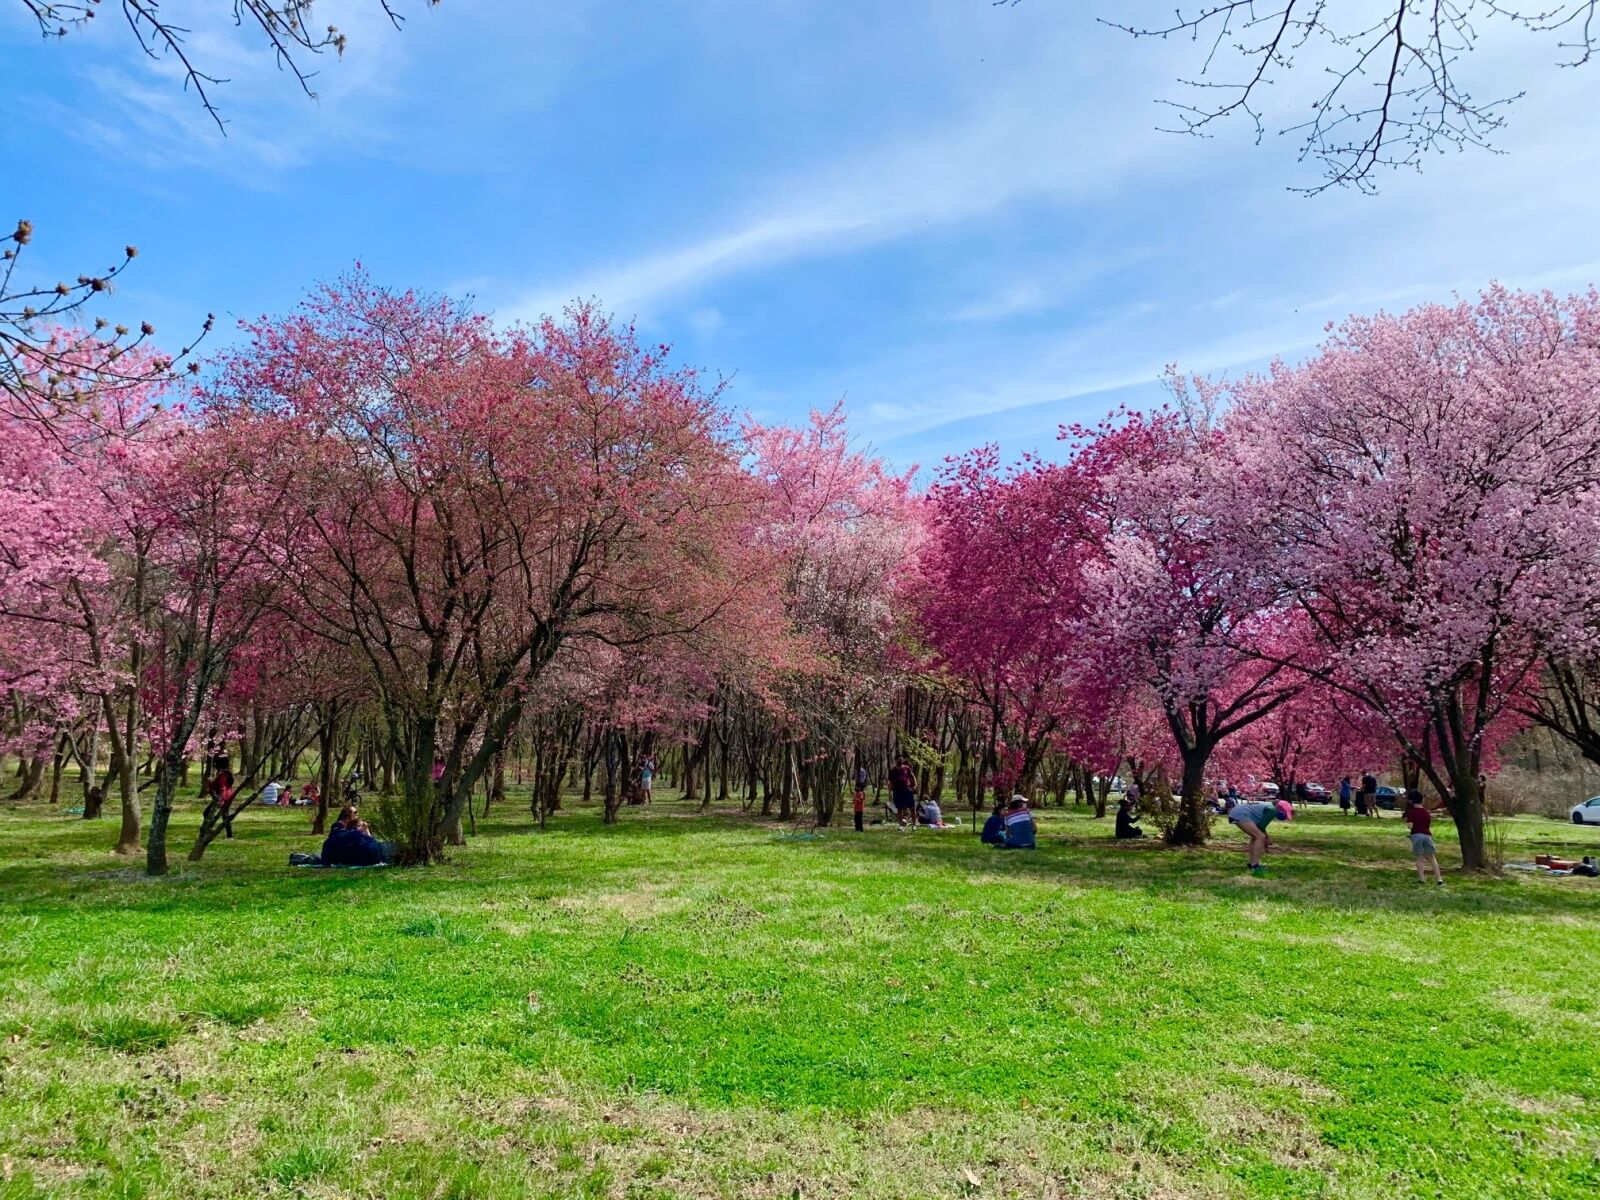 dc cherry blossom festival - national arboretum 